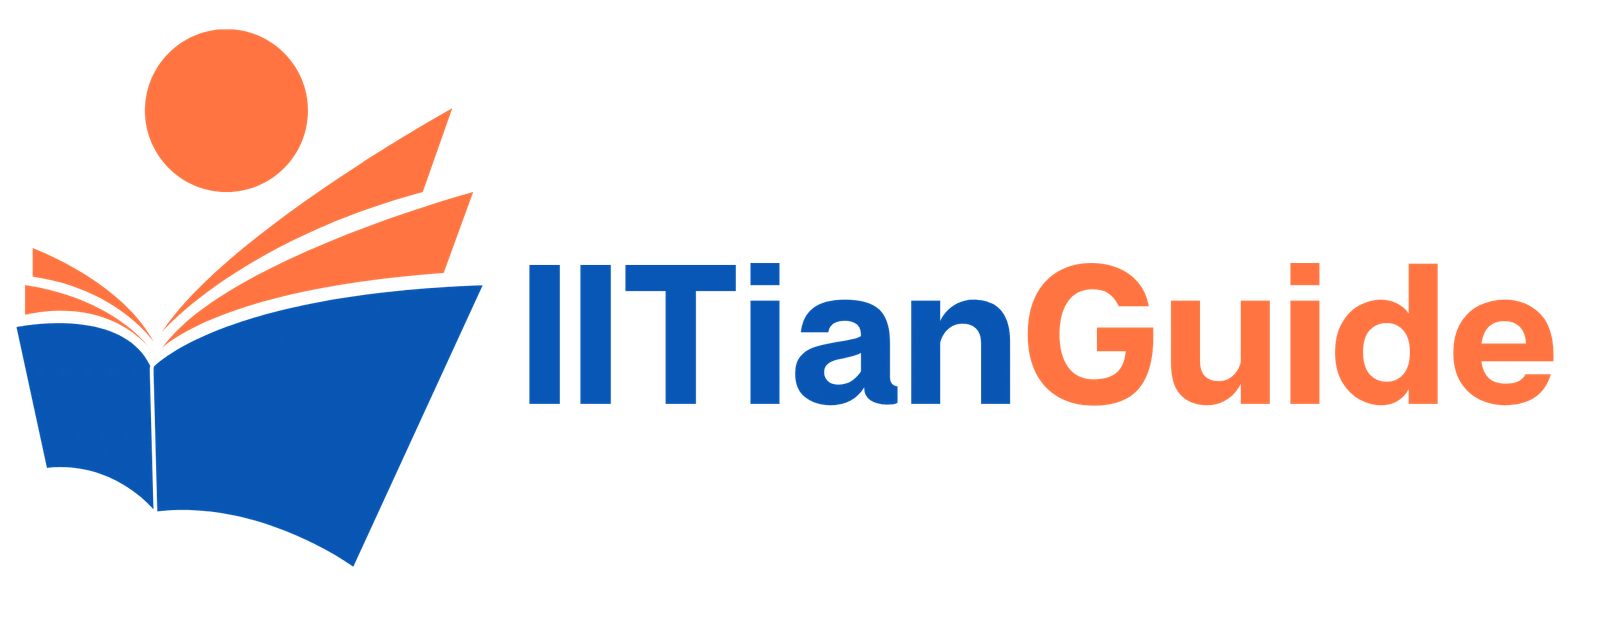 IITianGuide - Best Online IIT Coaching Classes India | Crack JEE Exam 2022